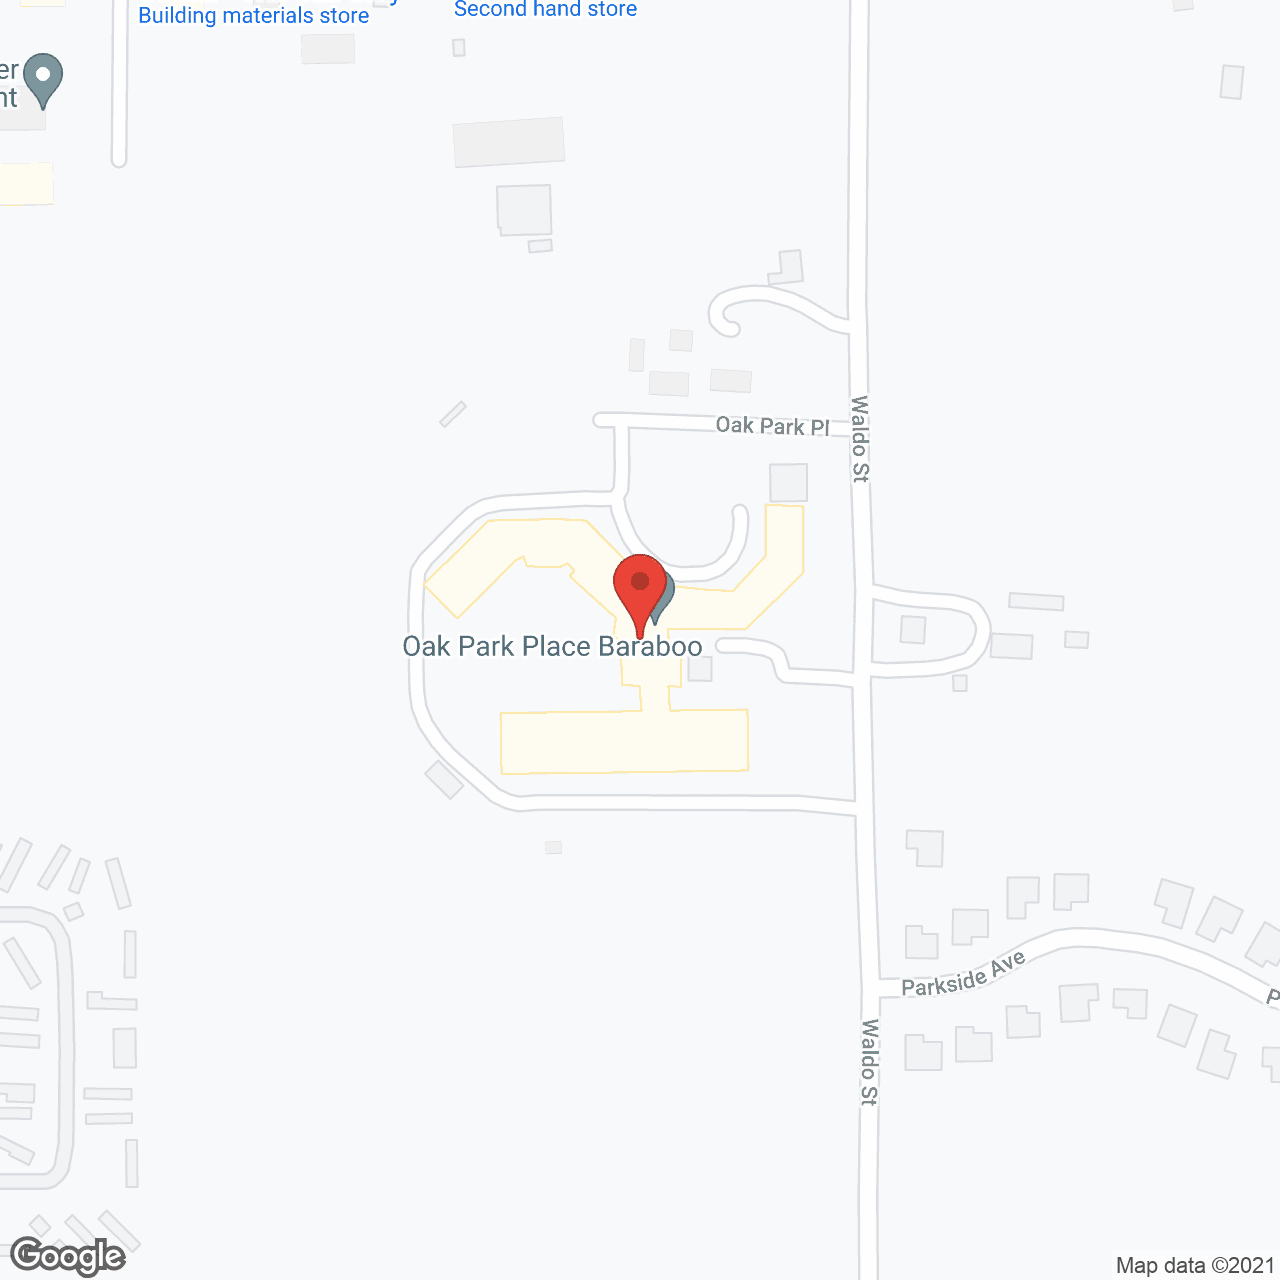 Oak Park Place - Baraboo in google map